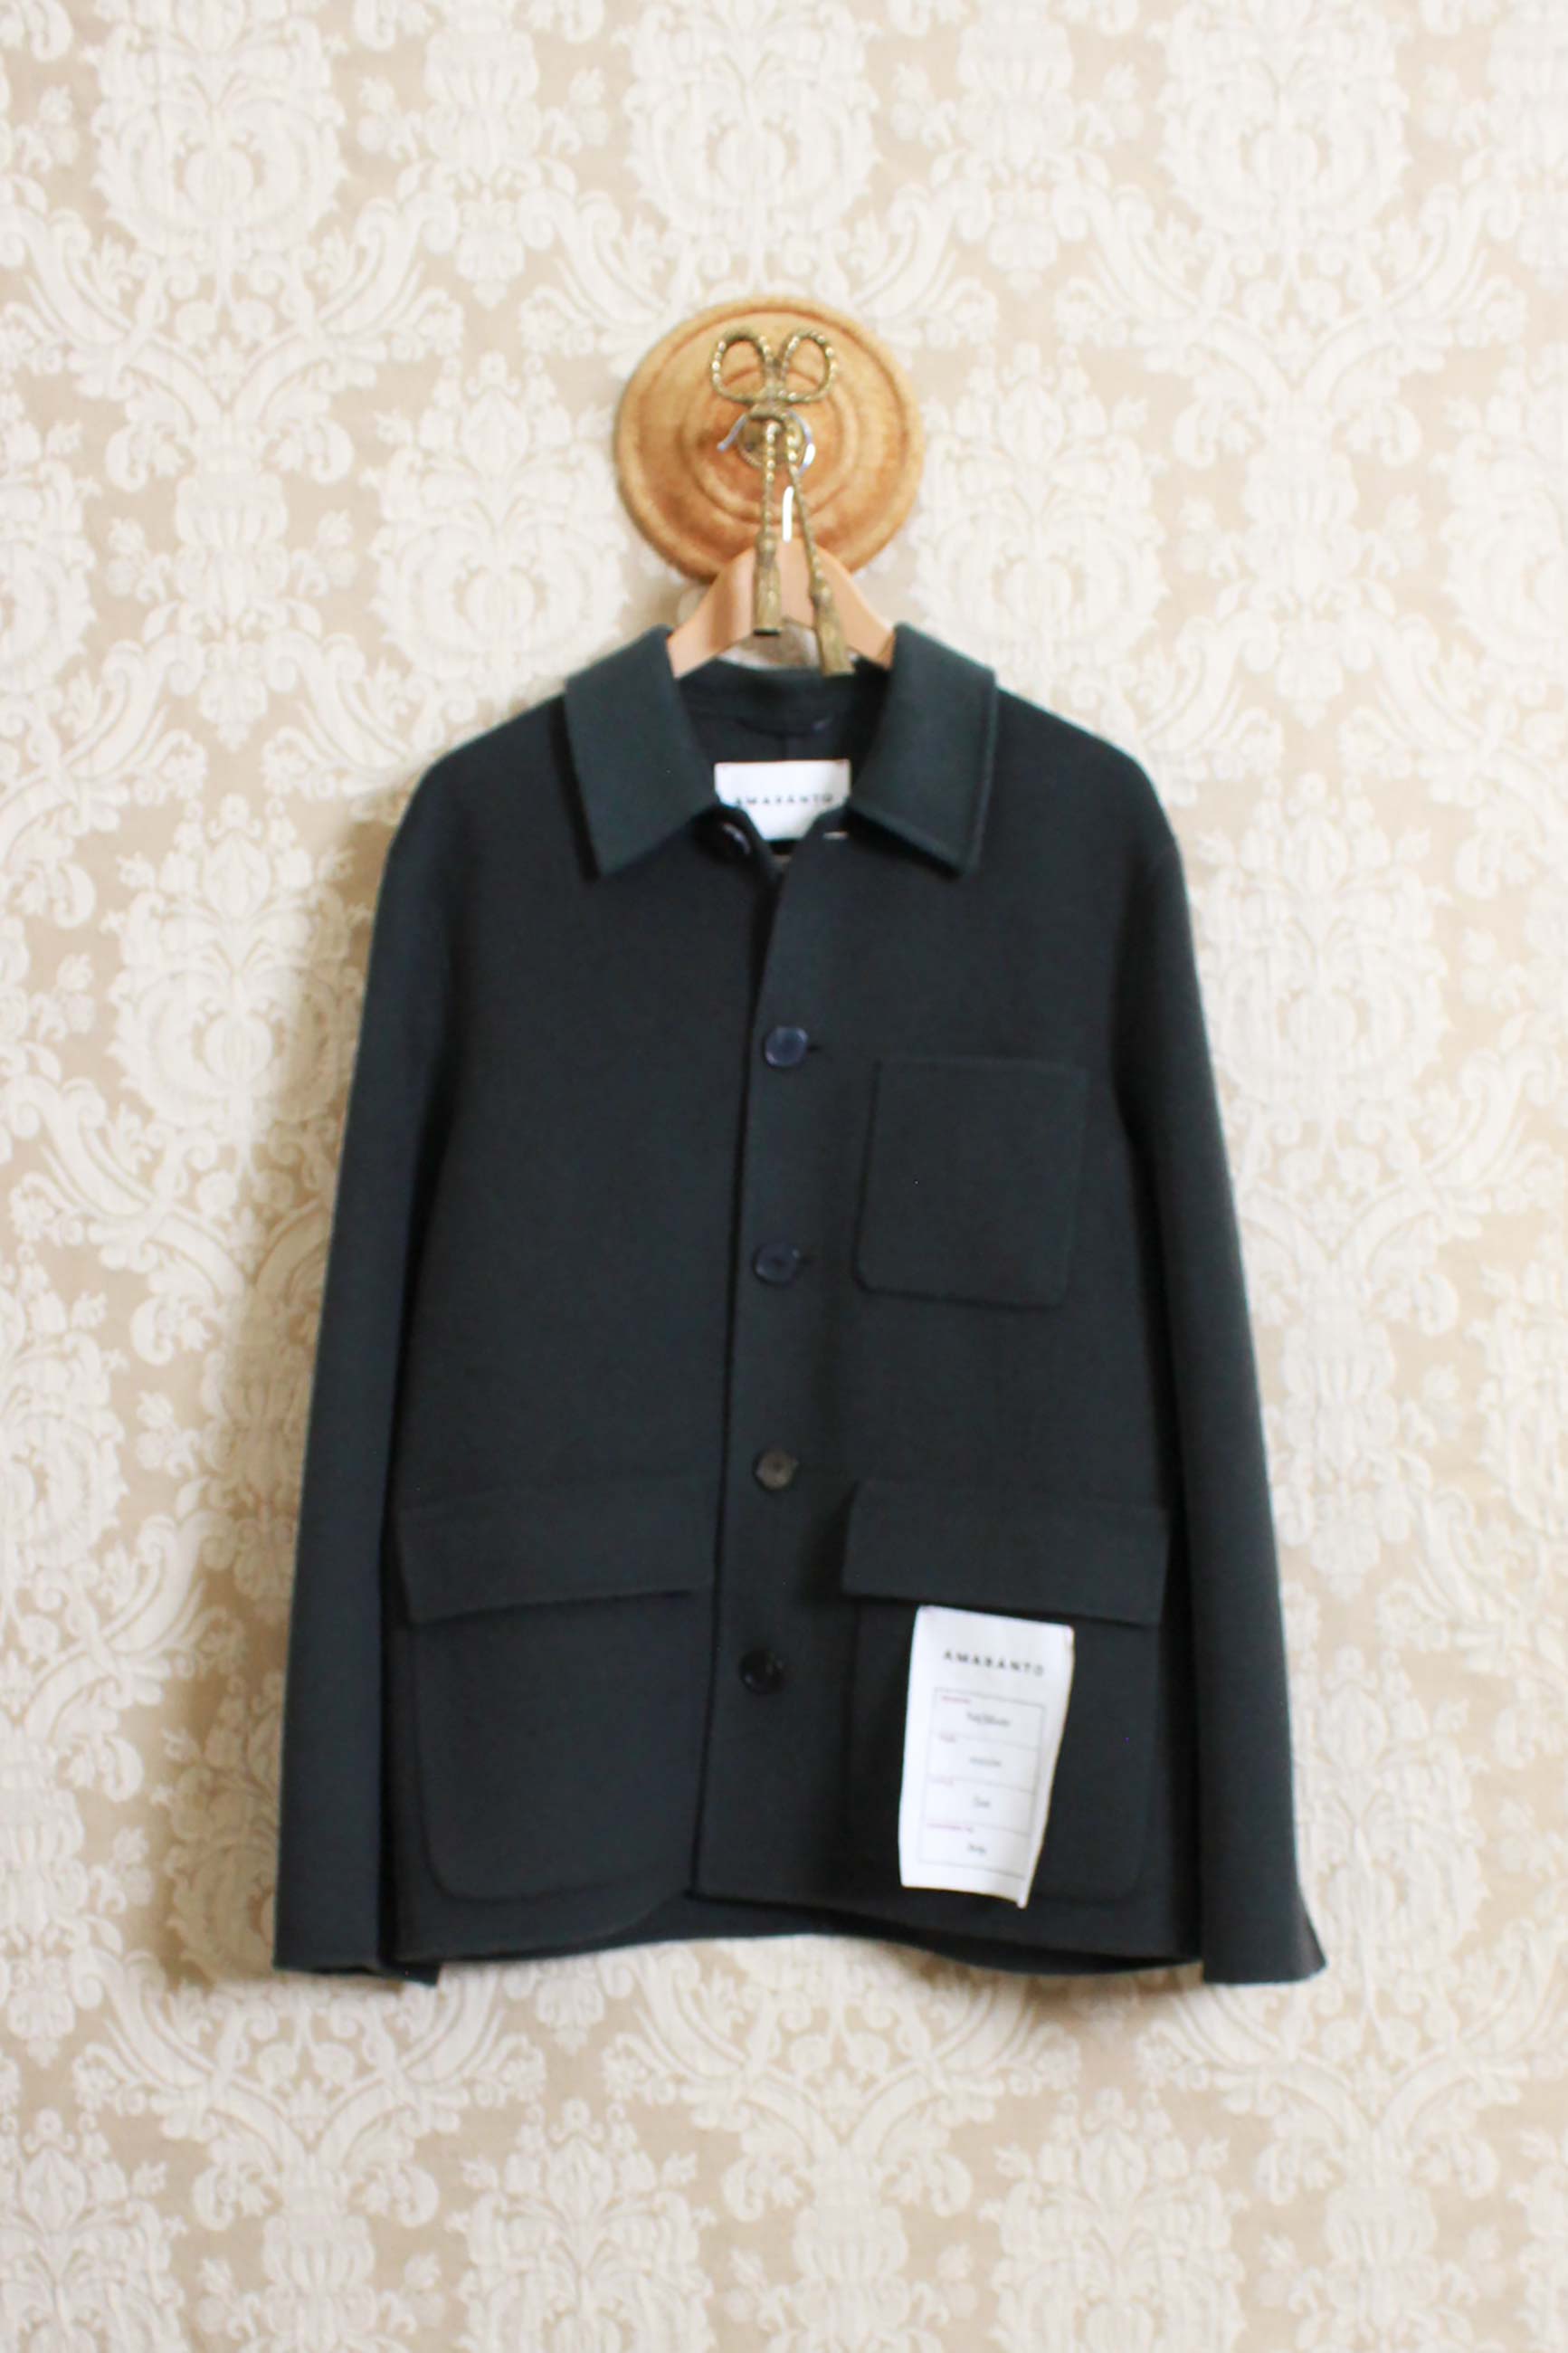 Nuova work jacket di amaranto in morbido panno di lana e cashmere color green forest